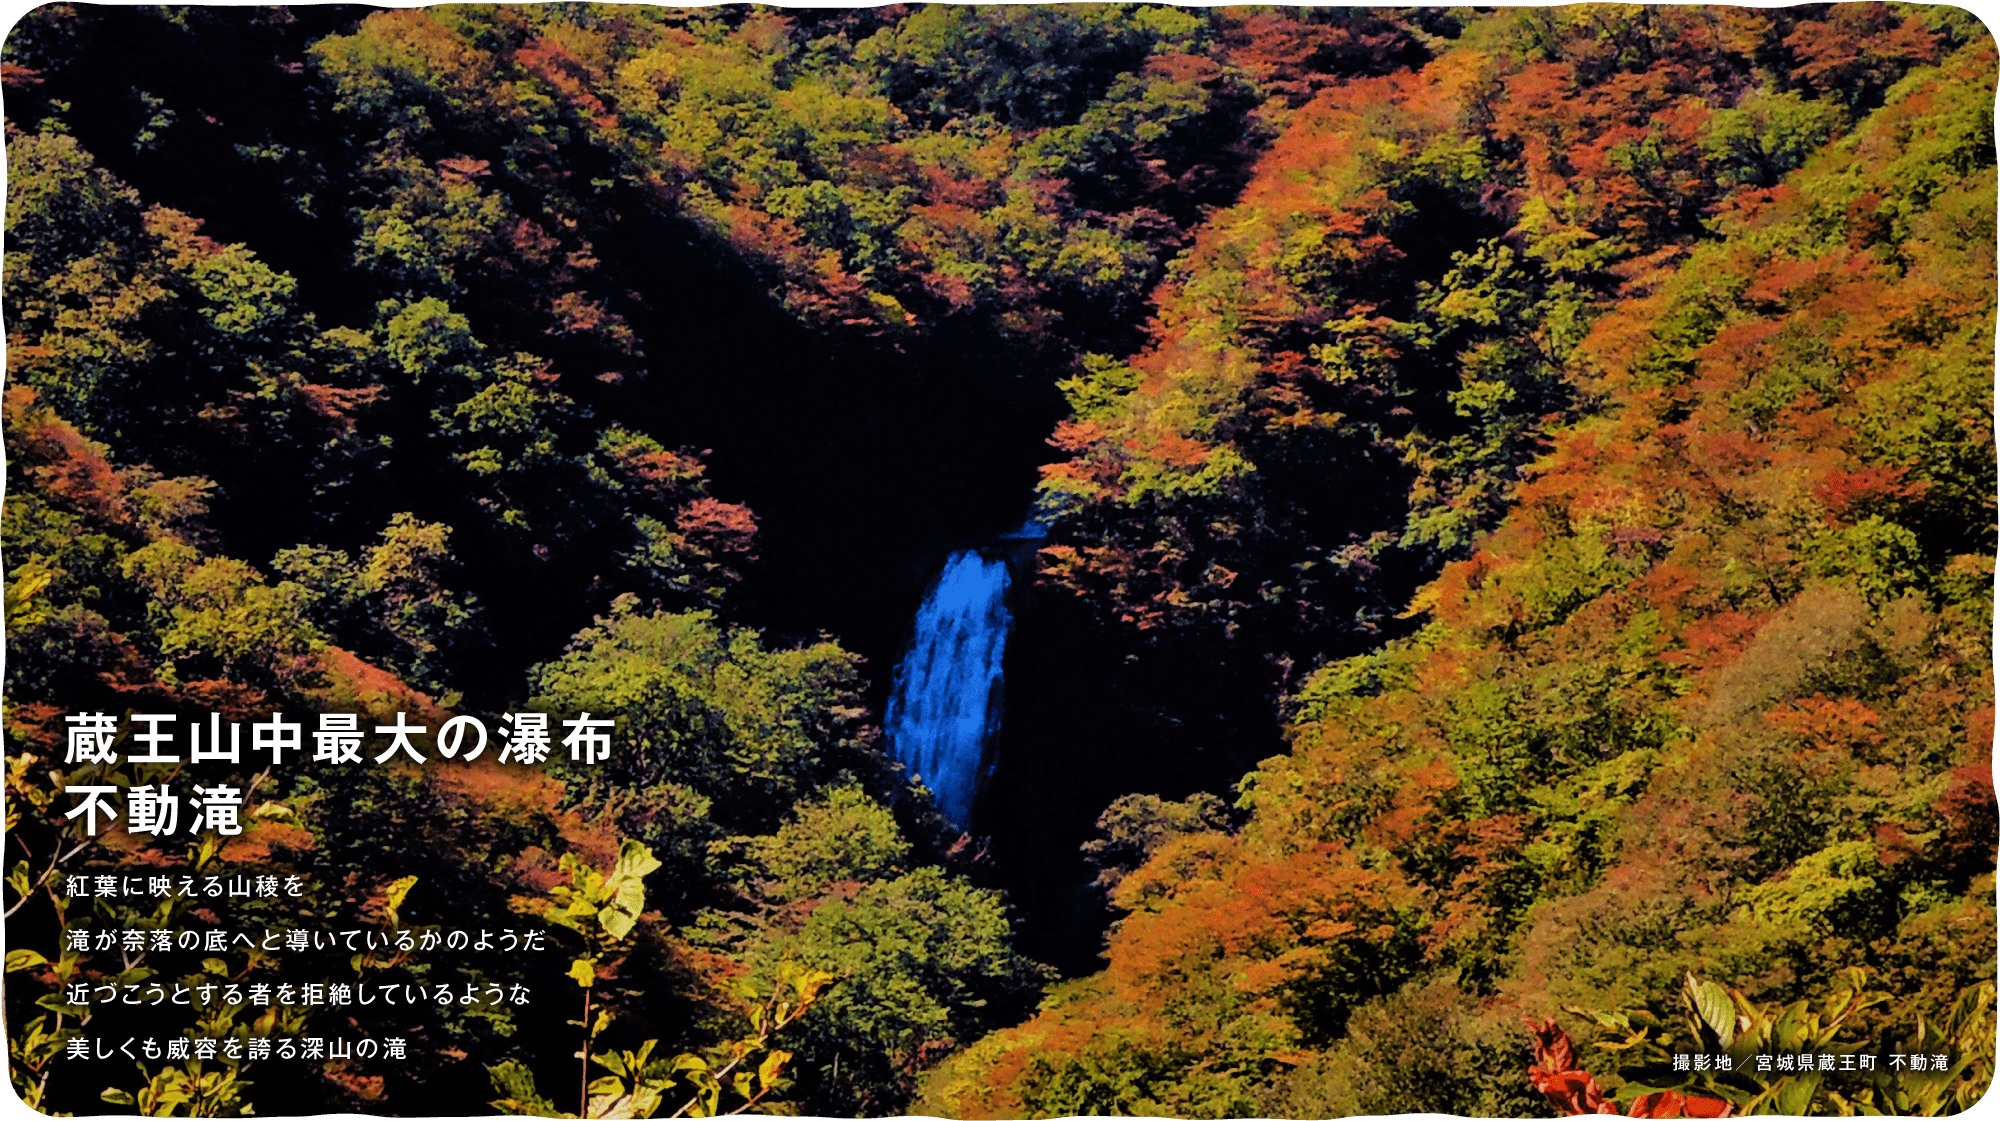 蔵王山中最大の瀑布不動滝　紅葉に映える山稜を滝が奈落の底へと導いているかのようだ近づこうとする者を拒絶しているような美しくも威容を誇る深山の滝